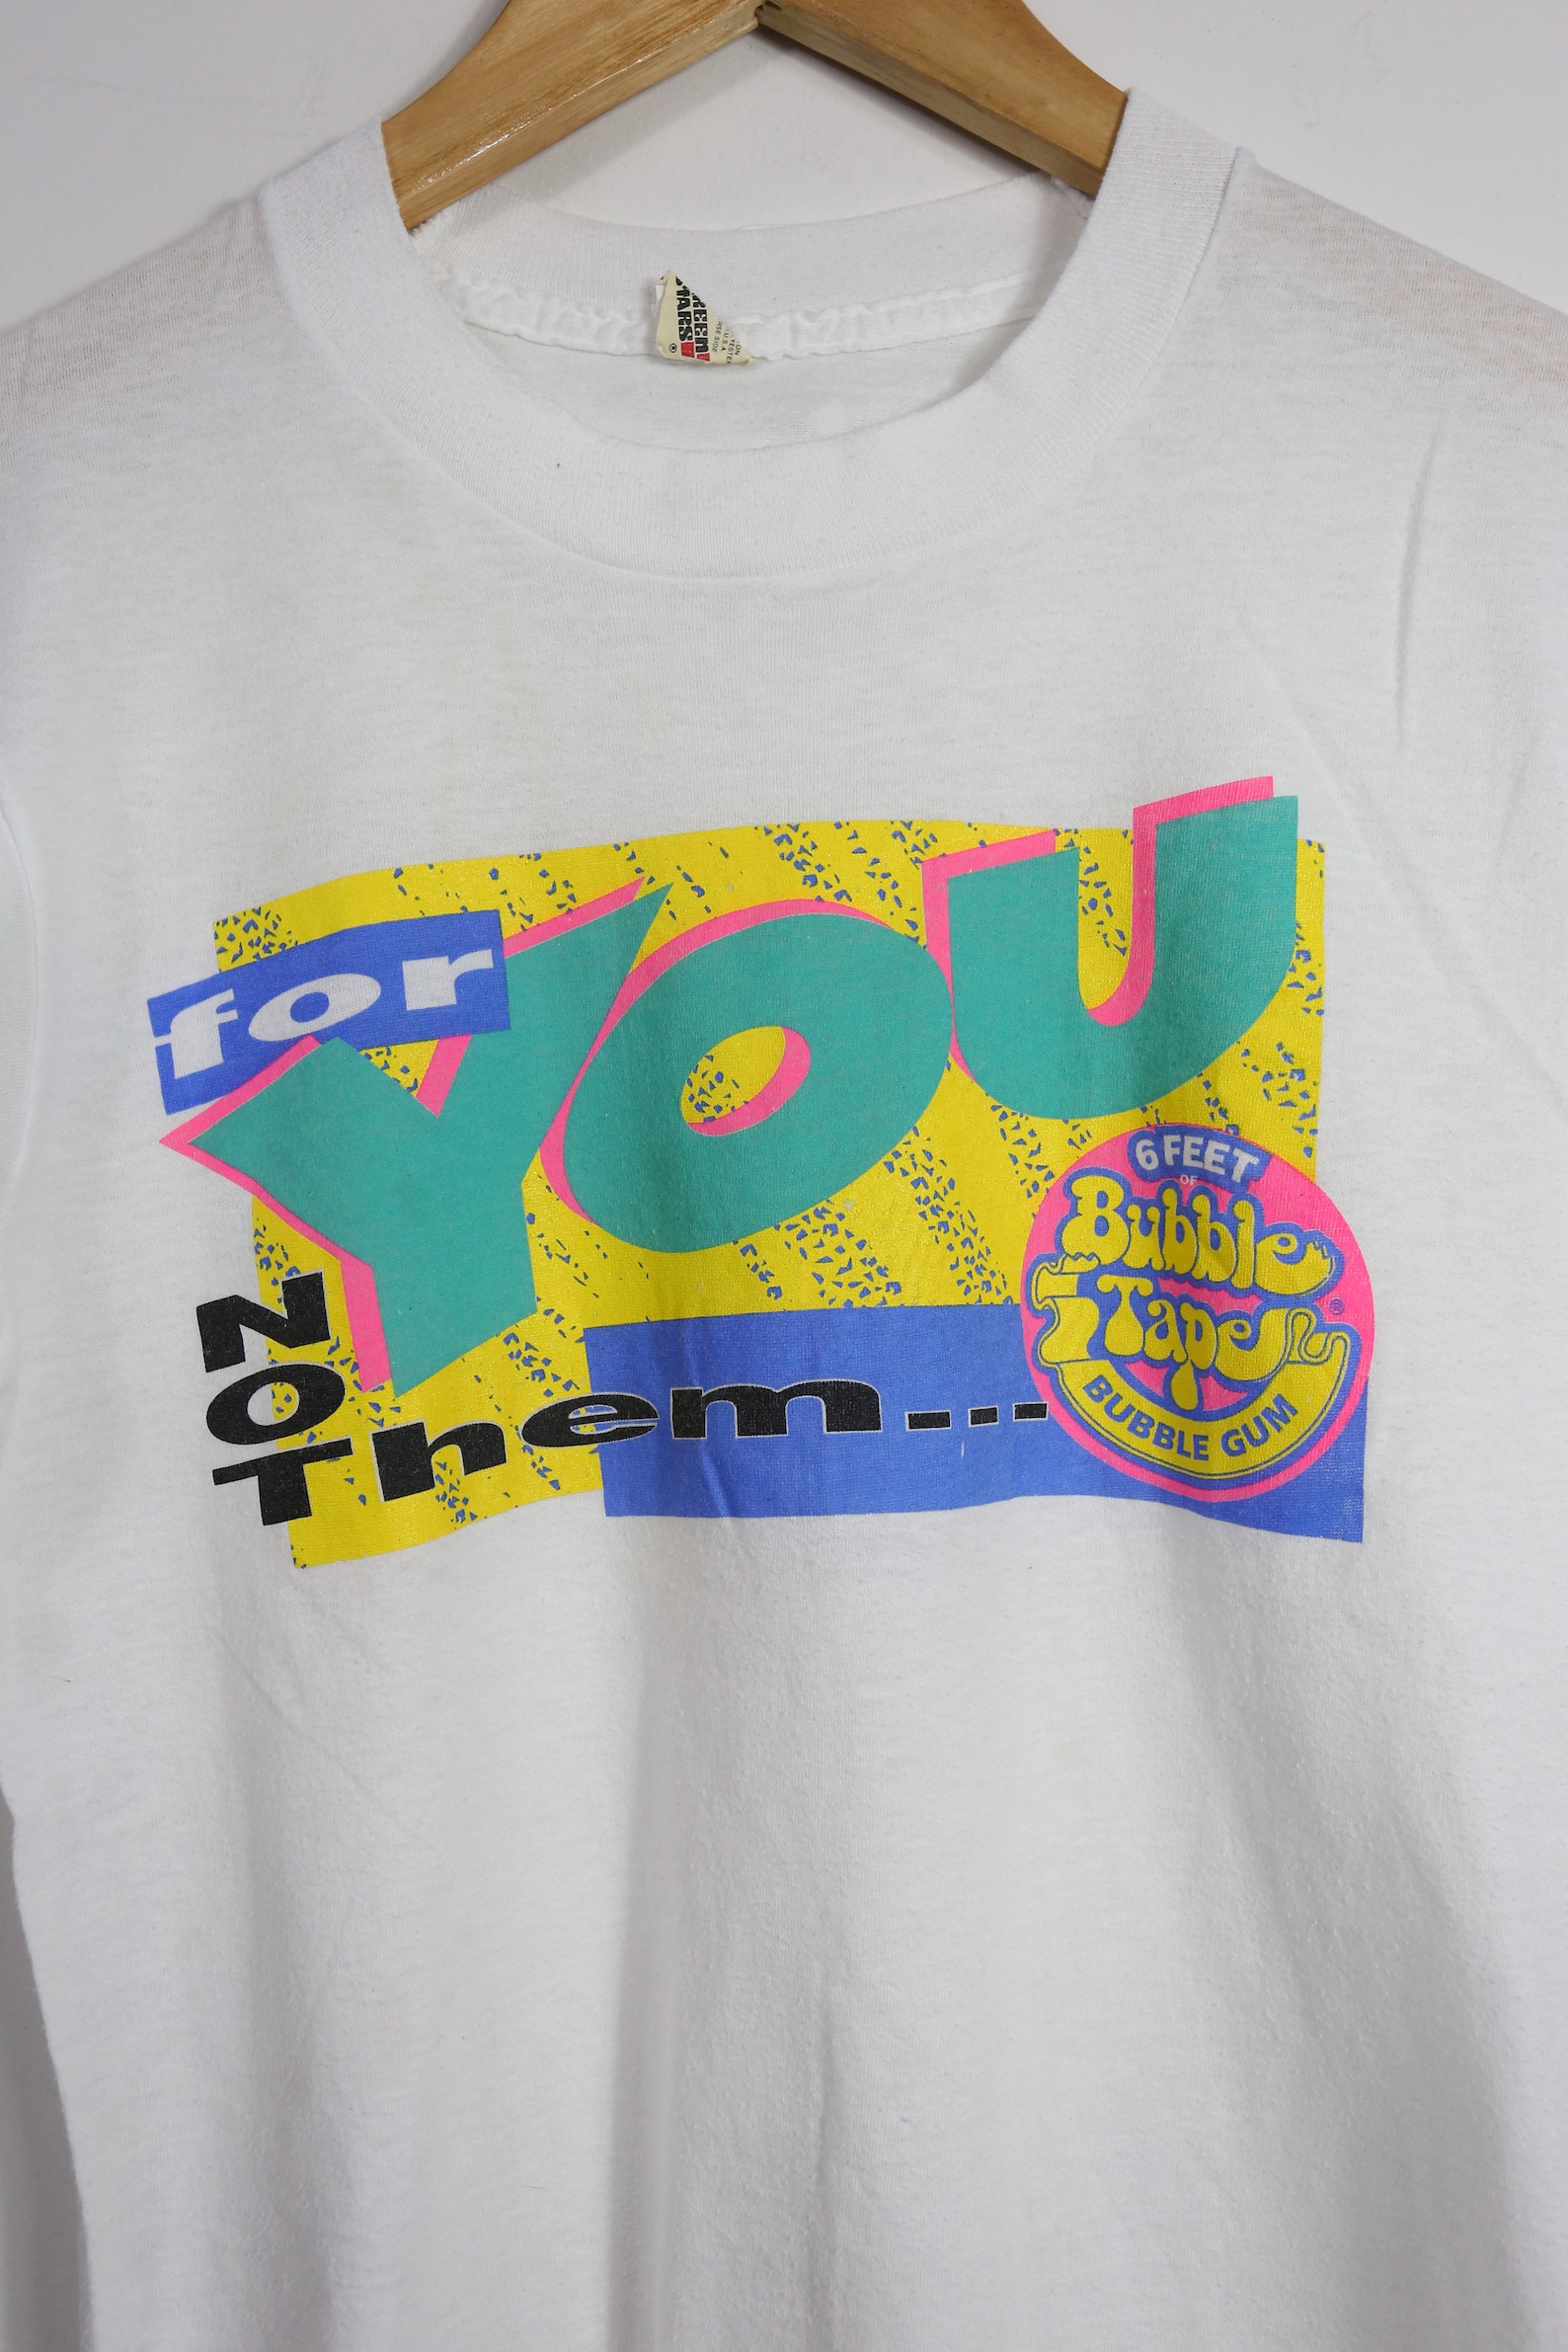 Vintage 90s Bubble Tape Bubble gum t-shirt S | Etsy